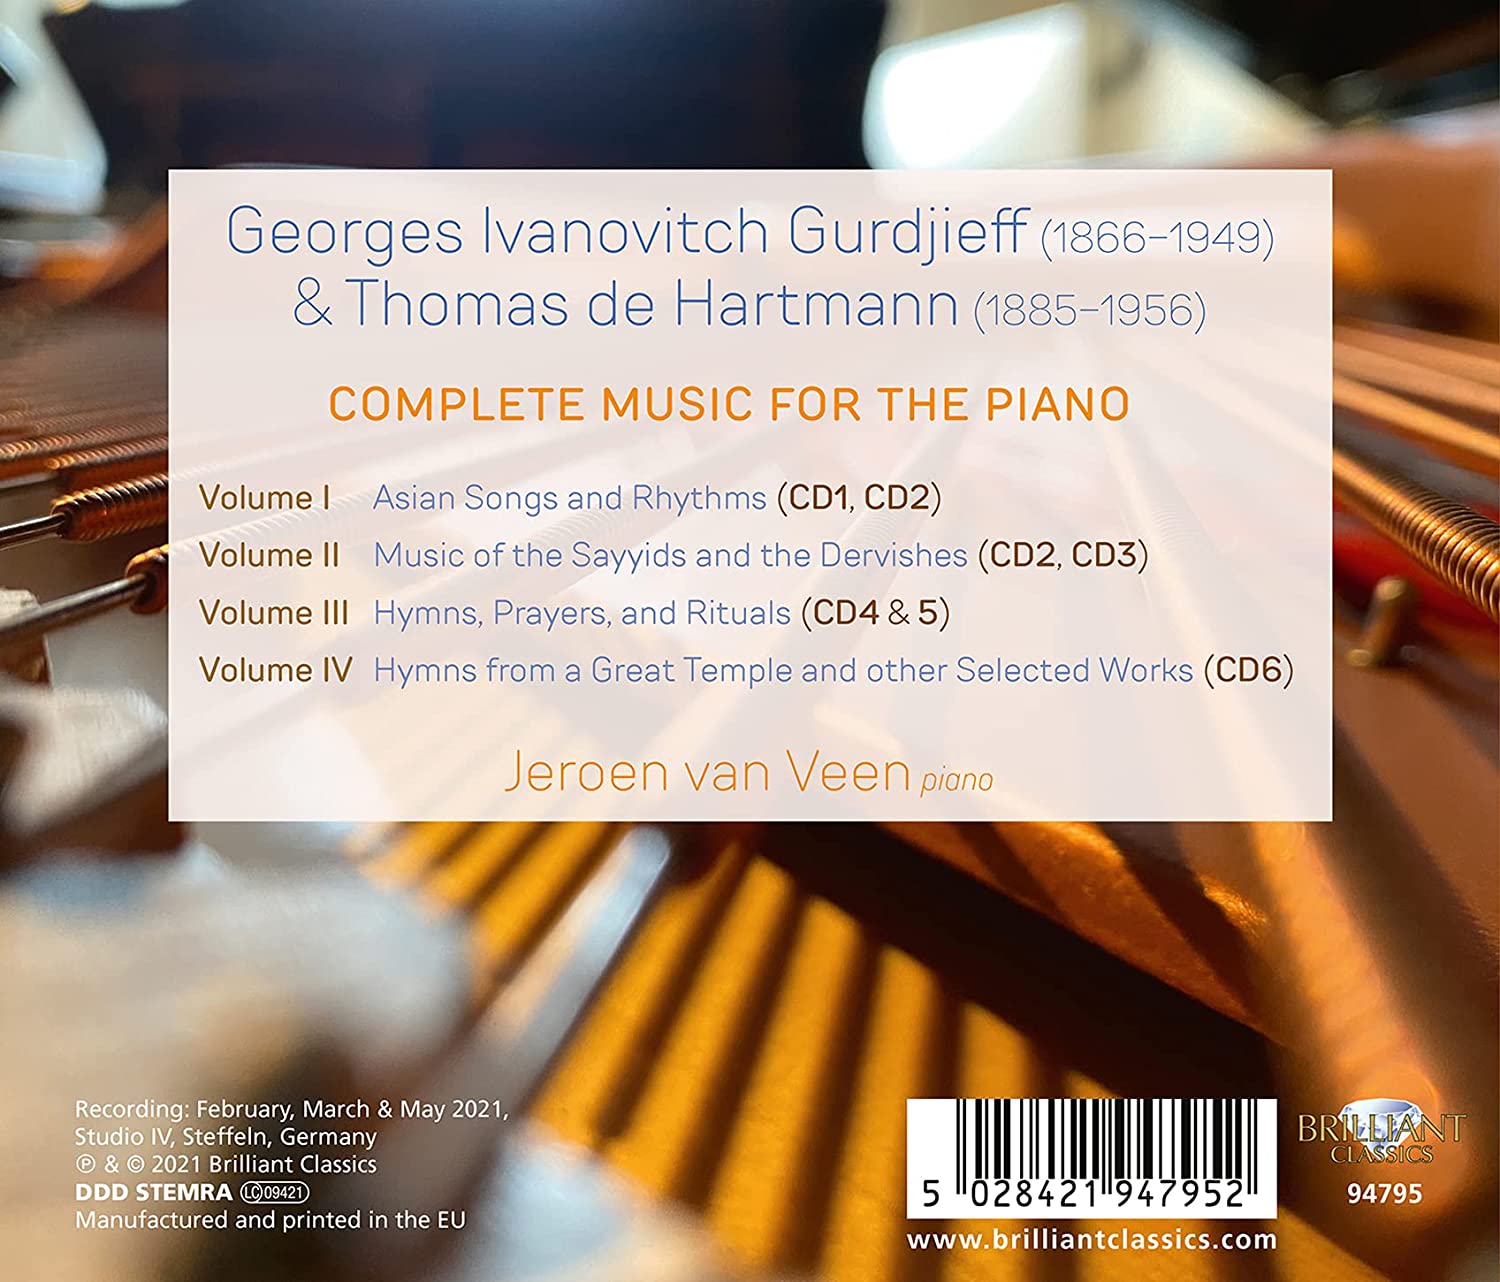 Jeroen van Veen 구르디예프 / 데 하르트만: 피아노 작품 전곡 (Gurdjieff / De Hartman: Complete Music for the Piano) 